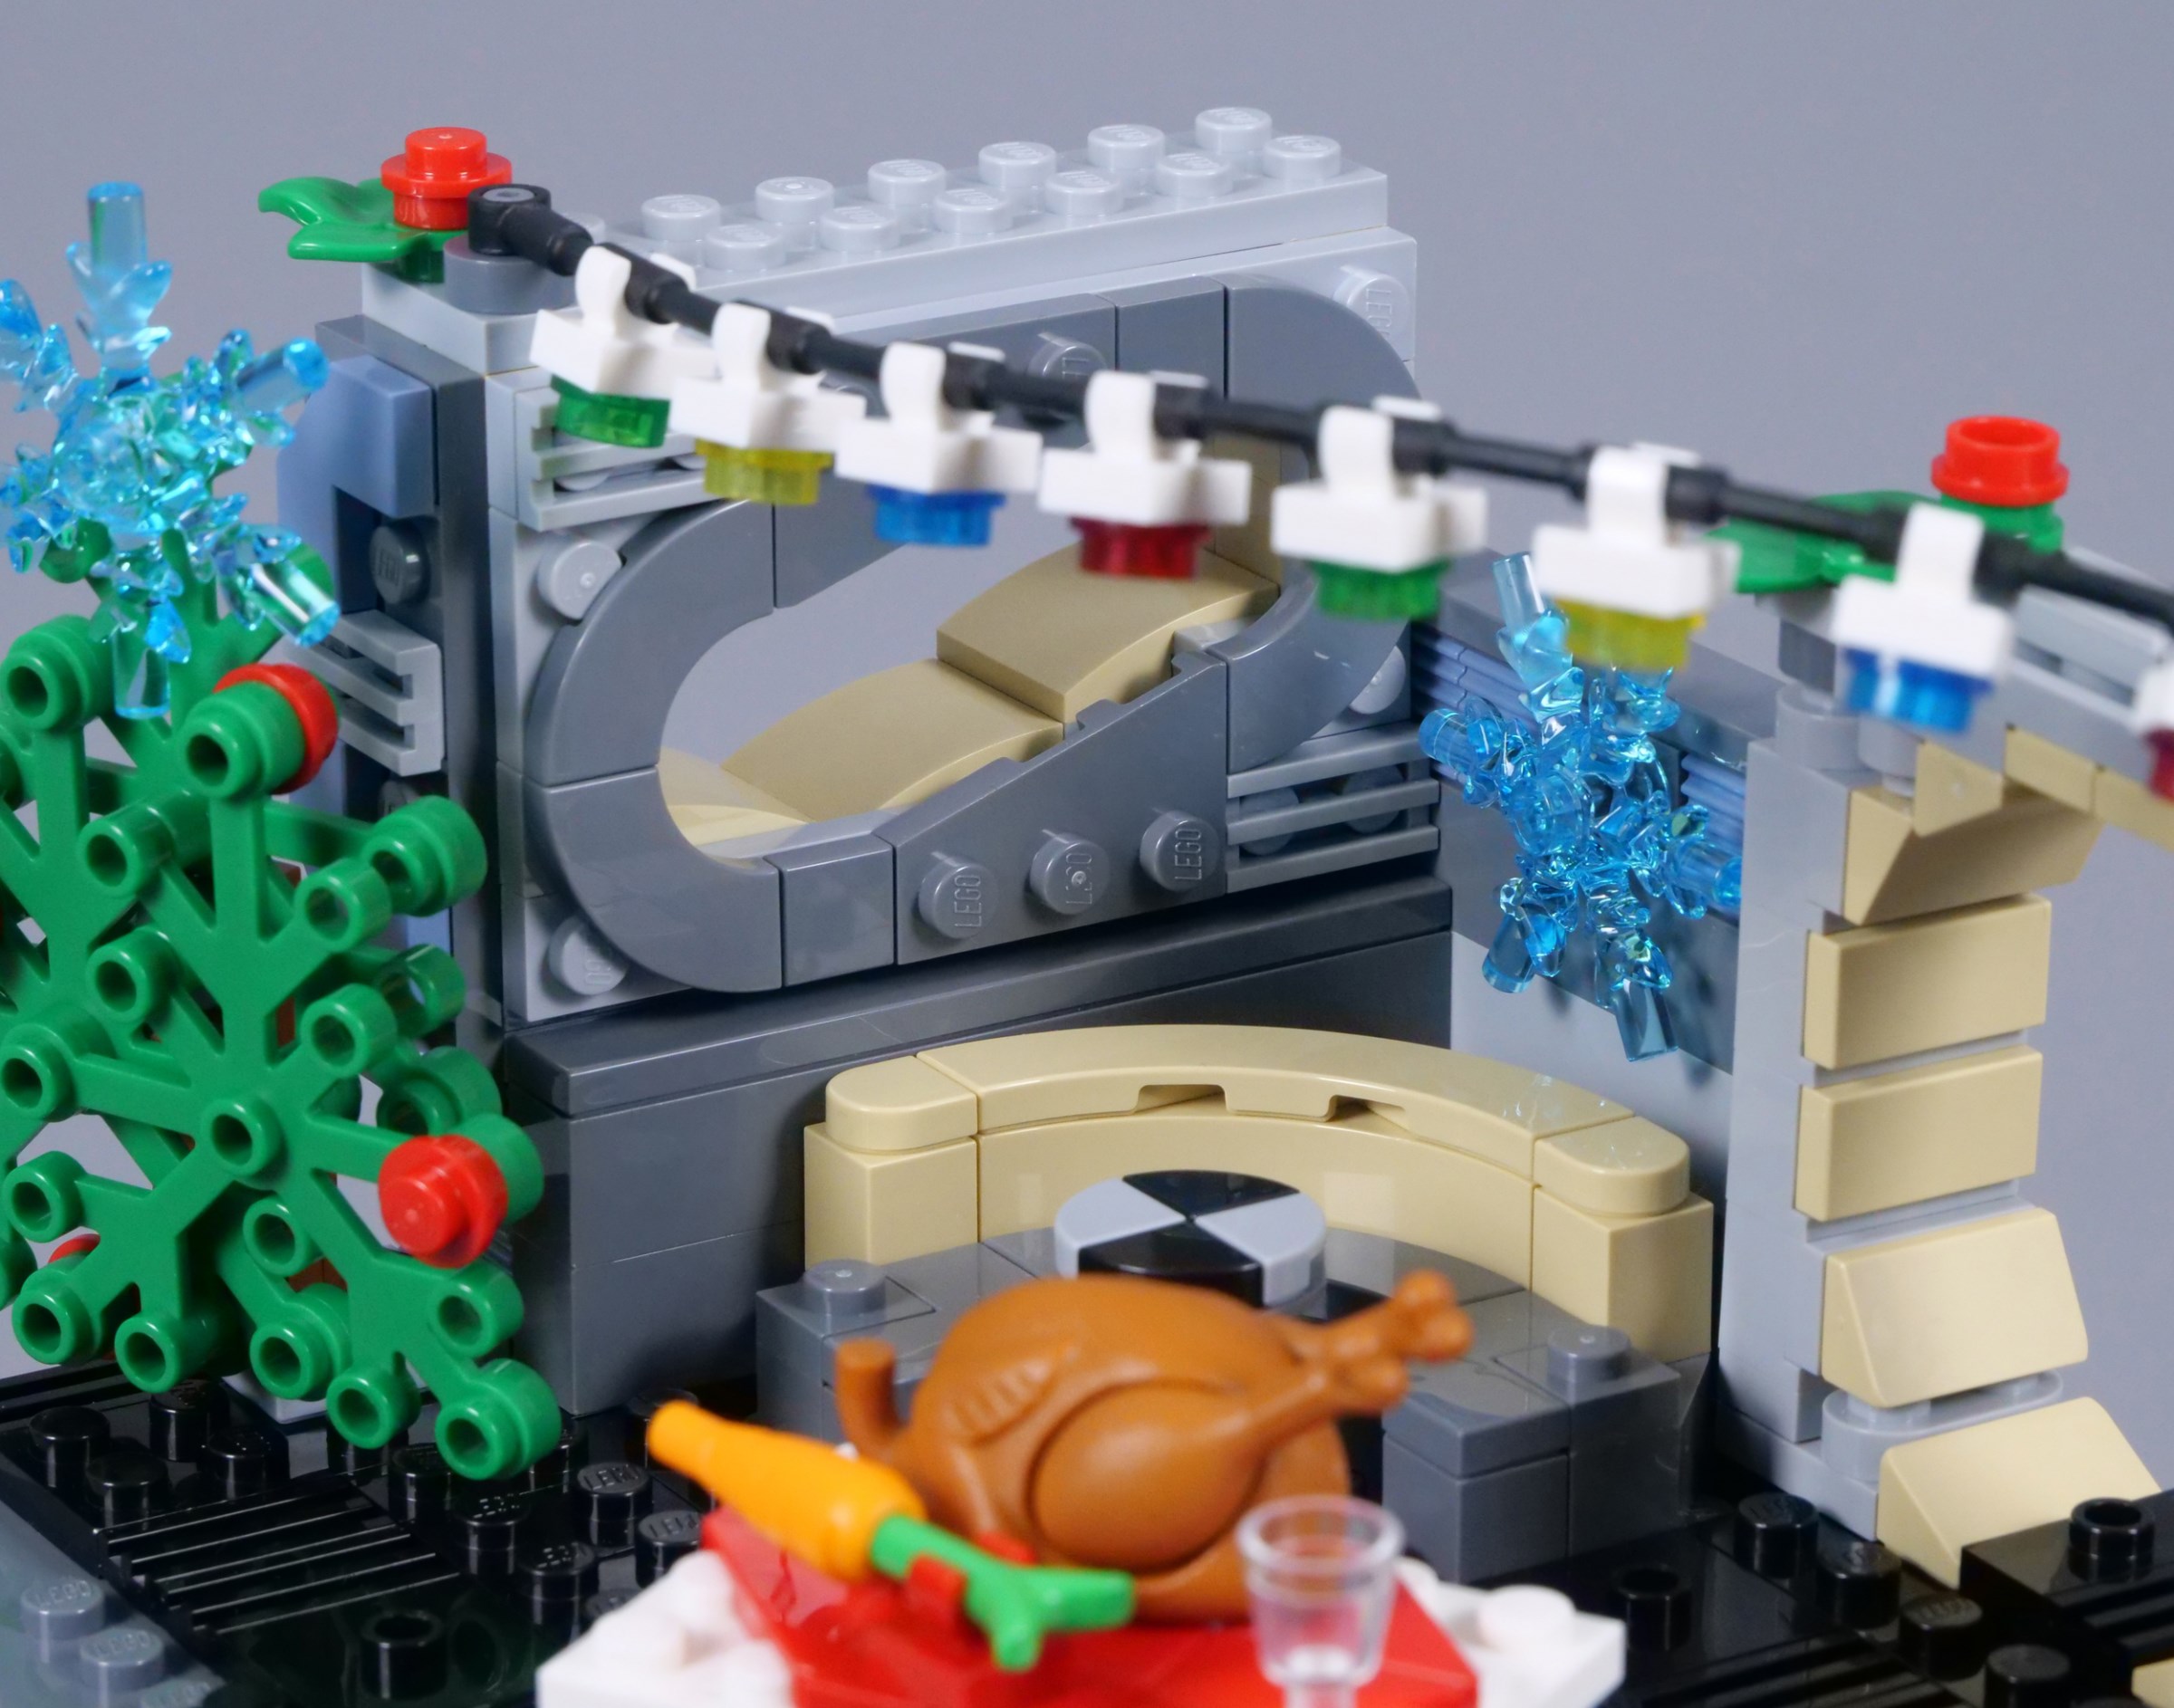 LEGO Star Wars Millennium Falcon Holiday Diorama (40658) Revealed